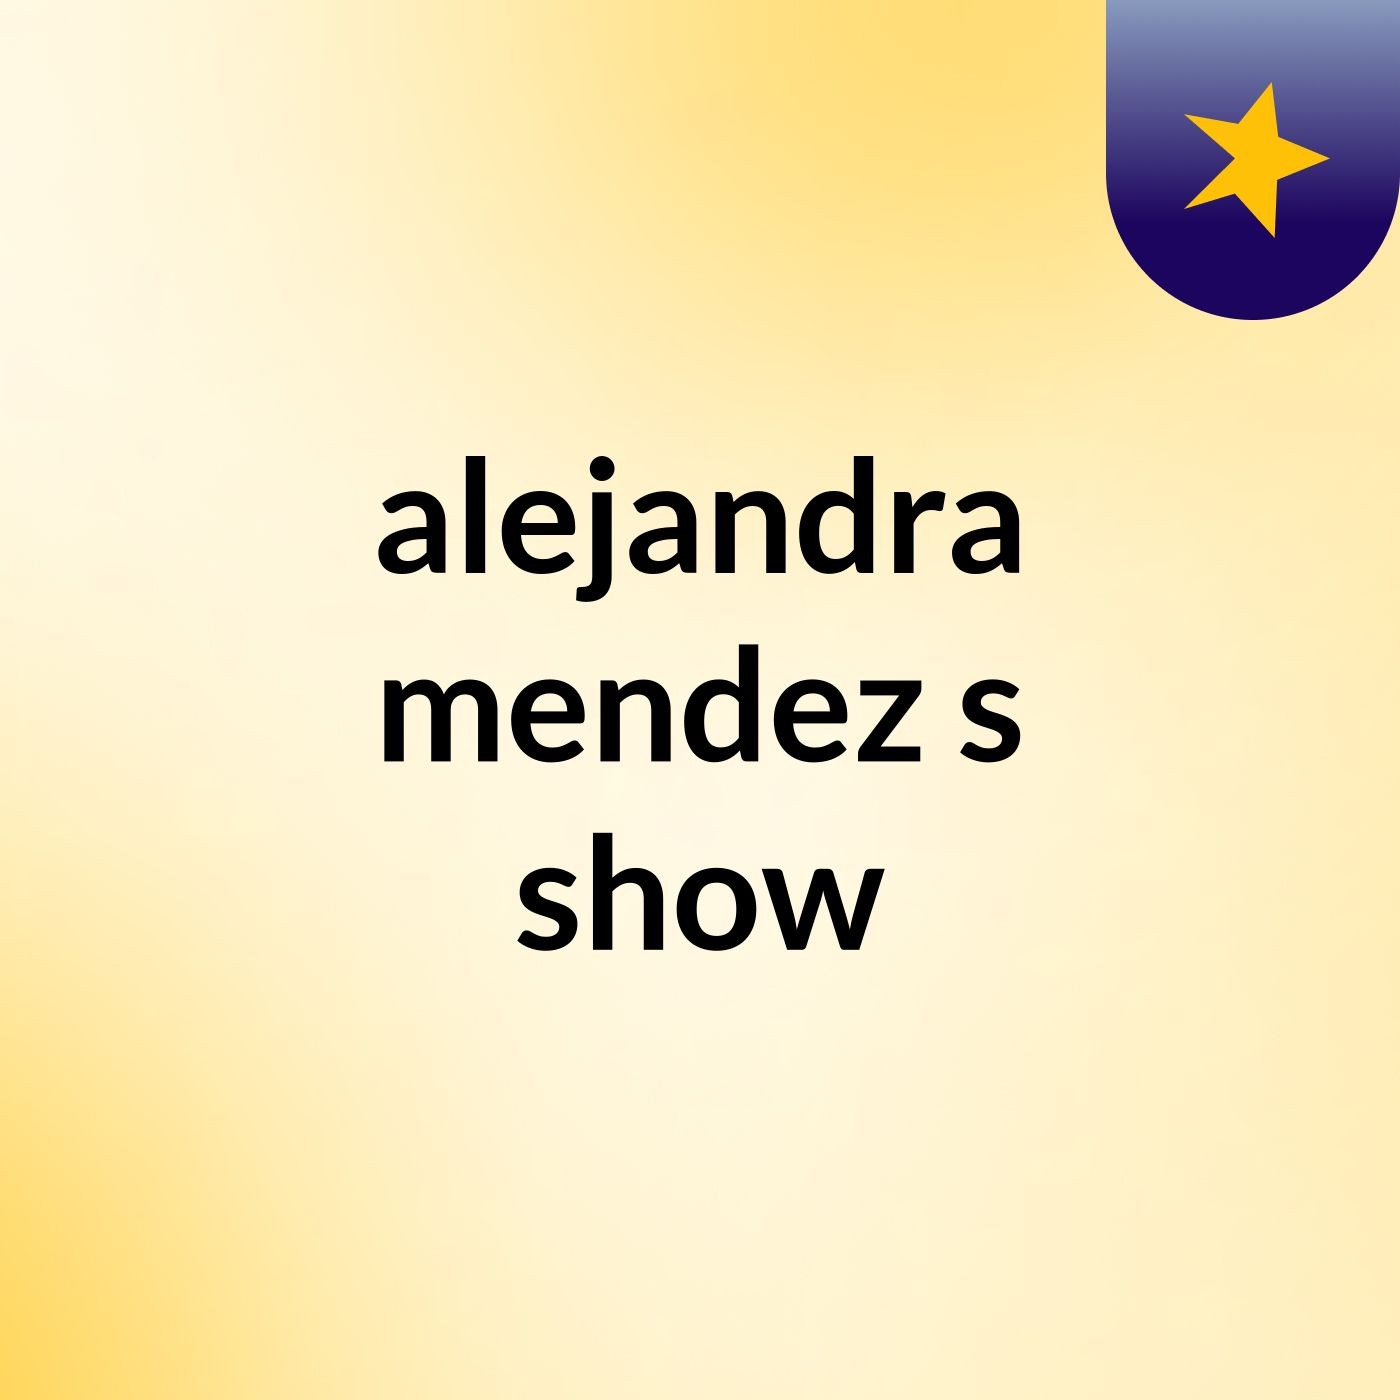 alejandra mendez's show